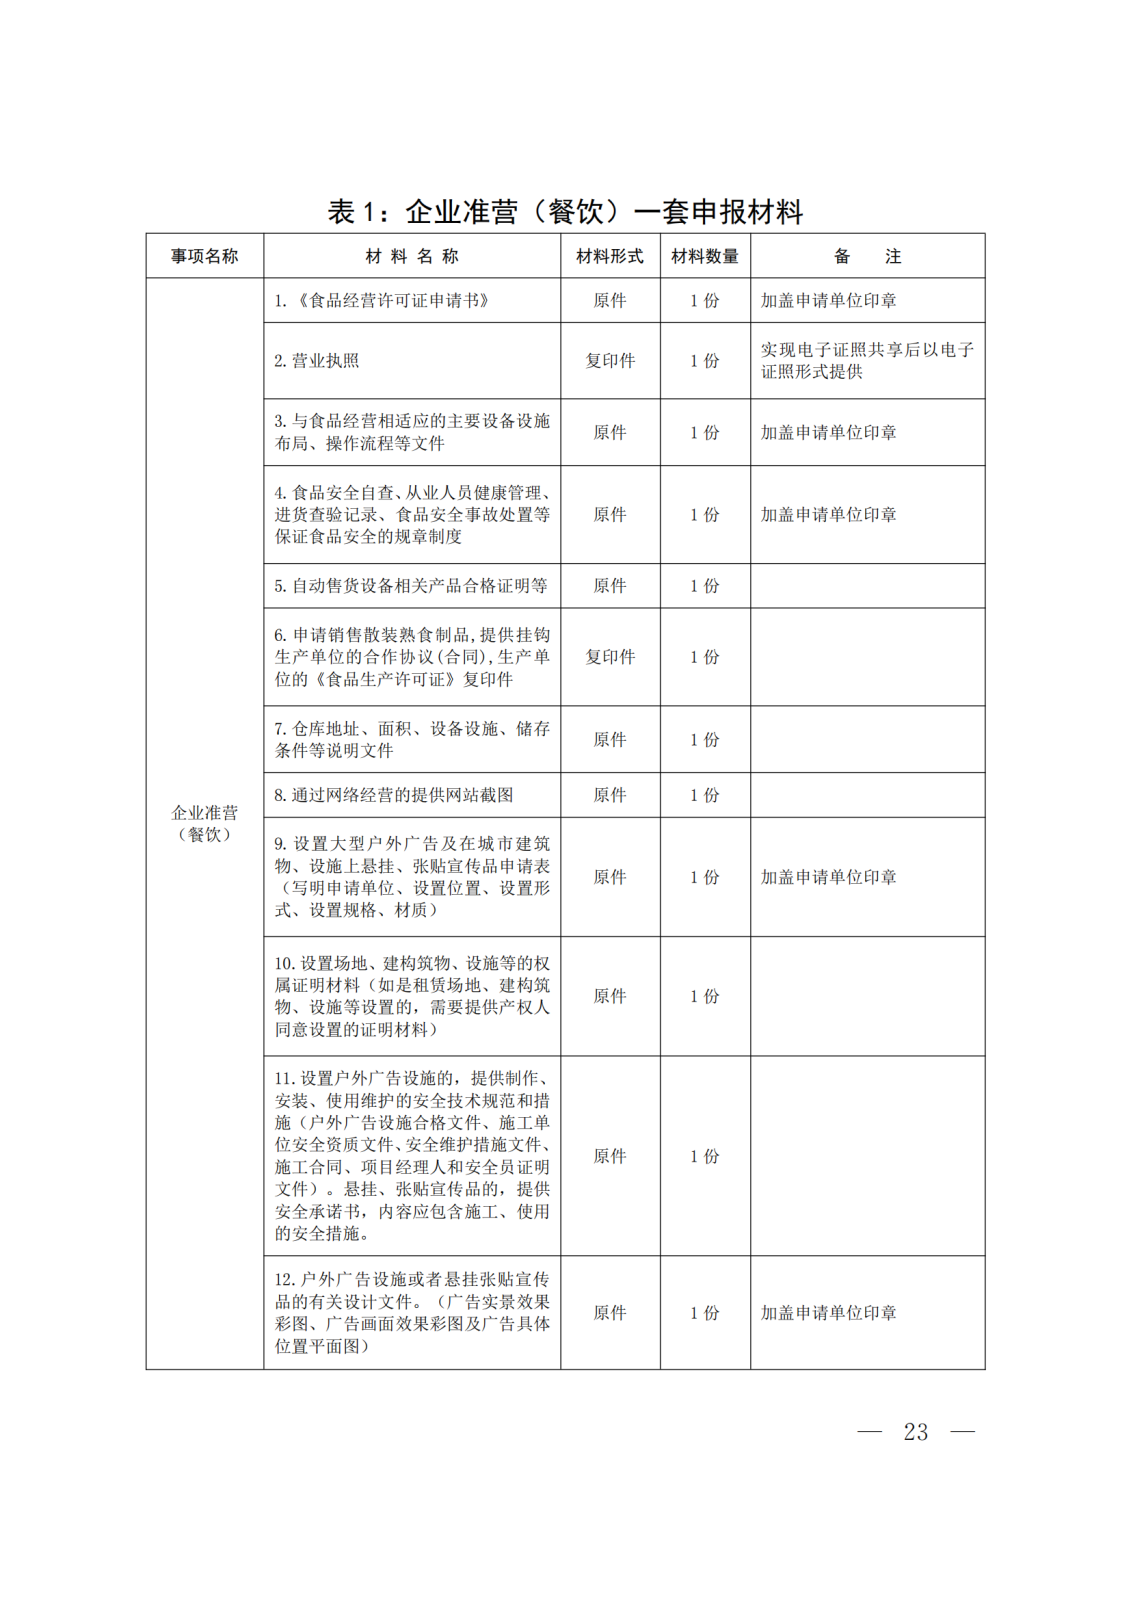 关于转发《河北省政务服务管理办公室等15部门关于印发“一件事一次办”业务流程和办理规范的通知》的通知 (2)(1)_23.png